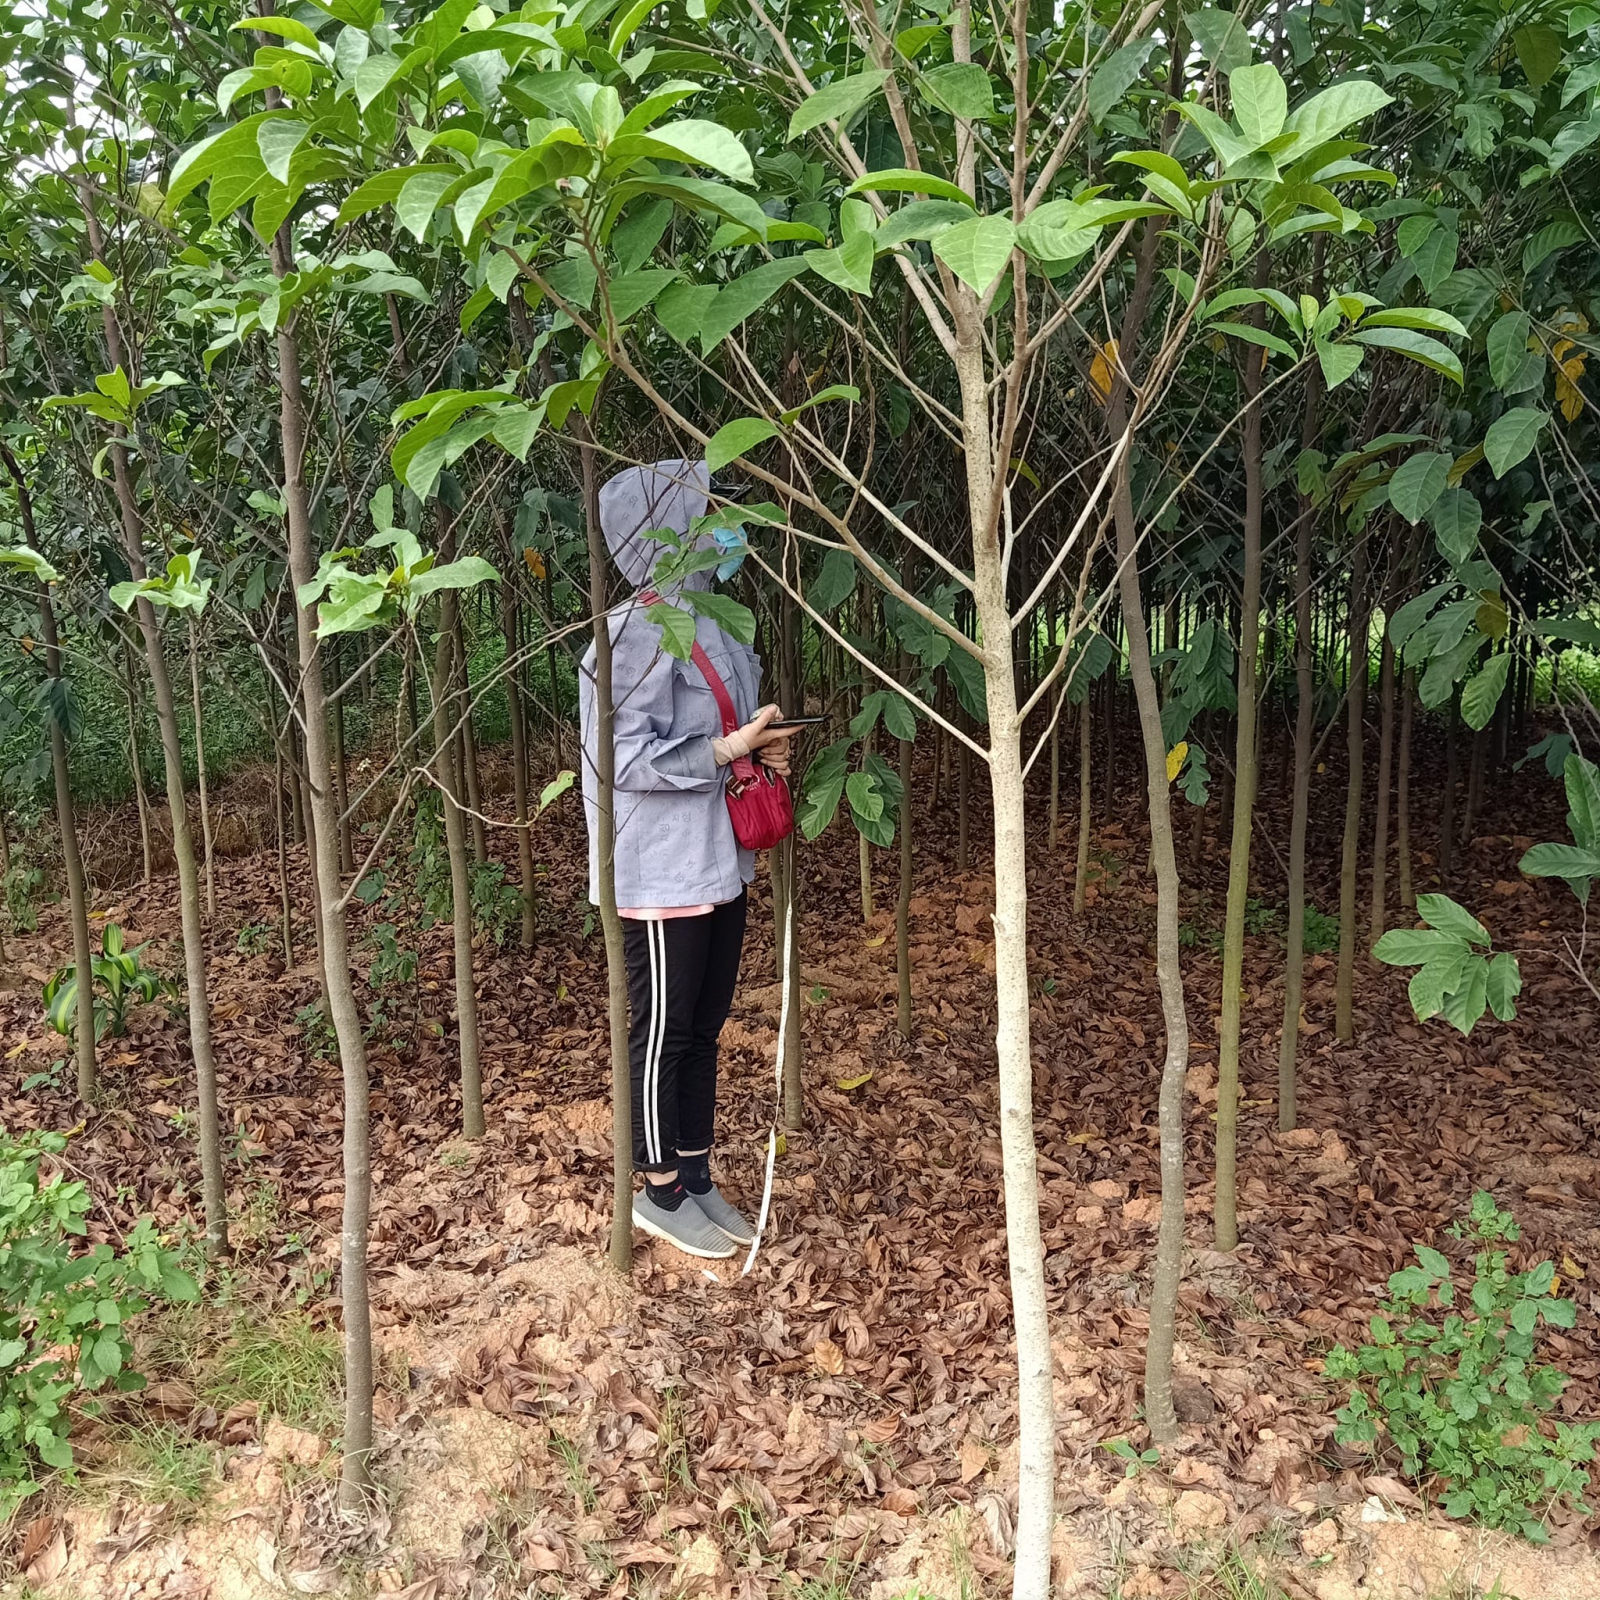 CÂY CHAY Bán cây chay- hướng dẫn trồng và chăm sóc cây chay Đà Nẵng